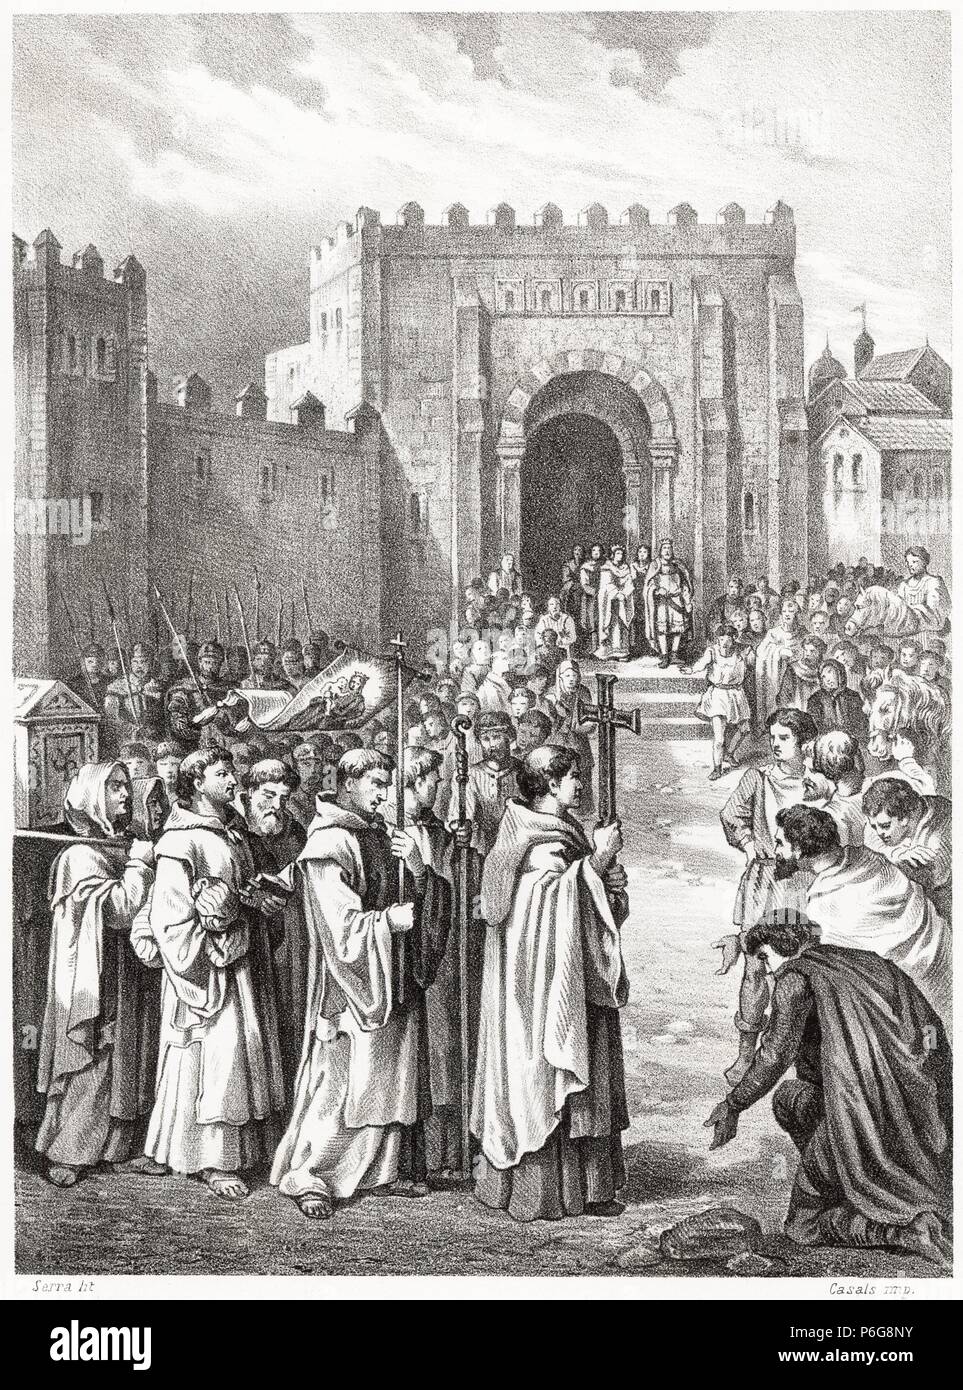 Historia de España. El rey Fernando I de Castilla recibe en León los restos de San Isidoro en el año 1063. Grabado de 1872. Stock Photo